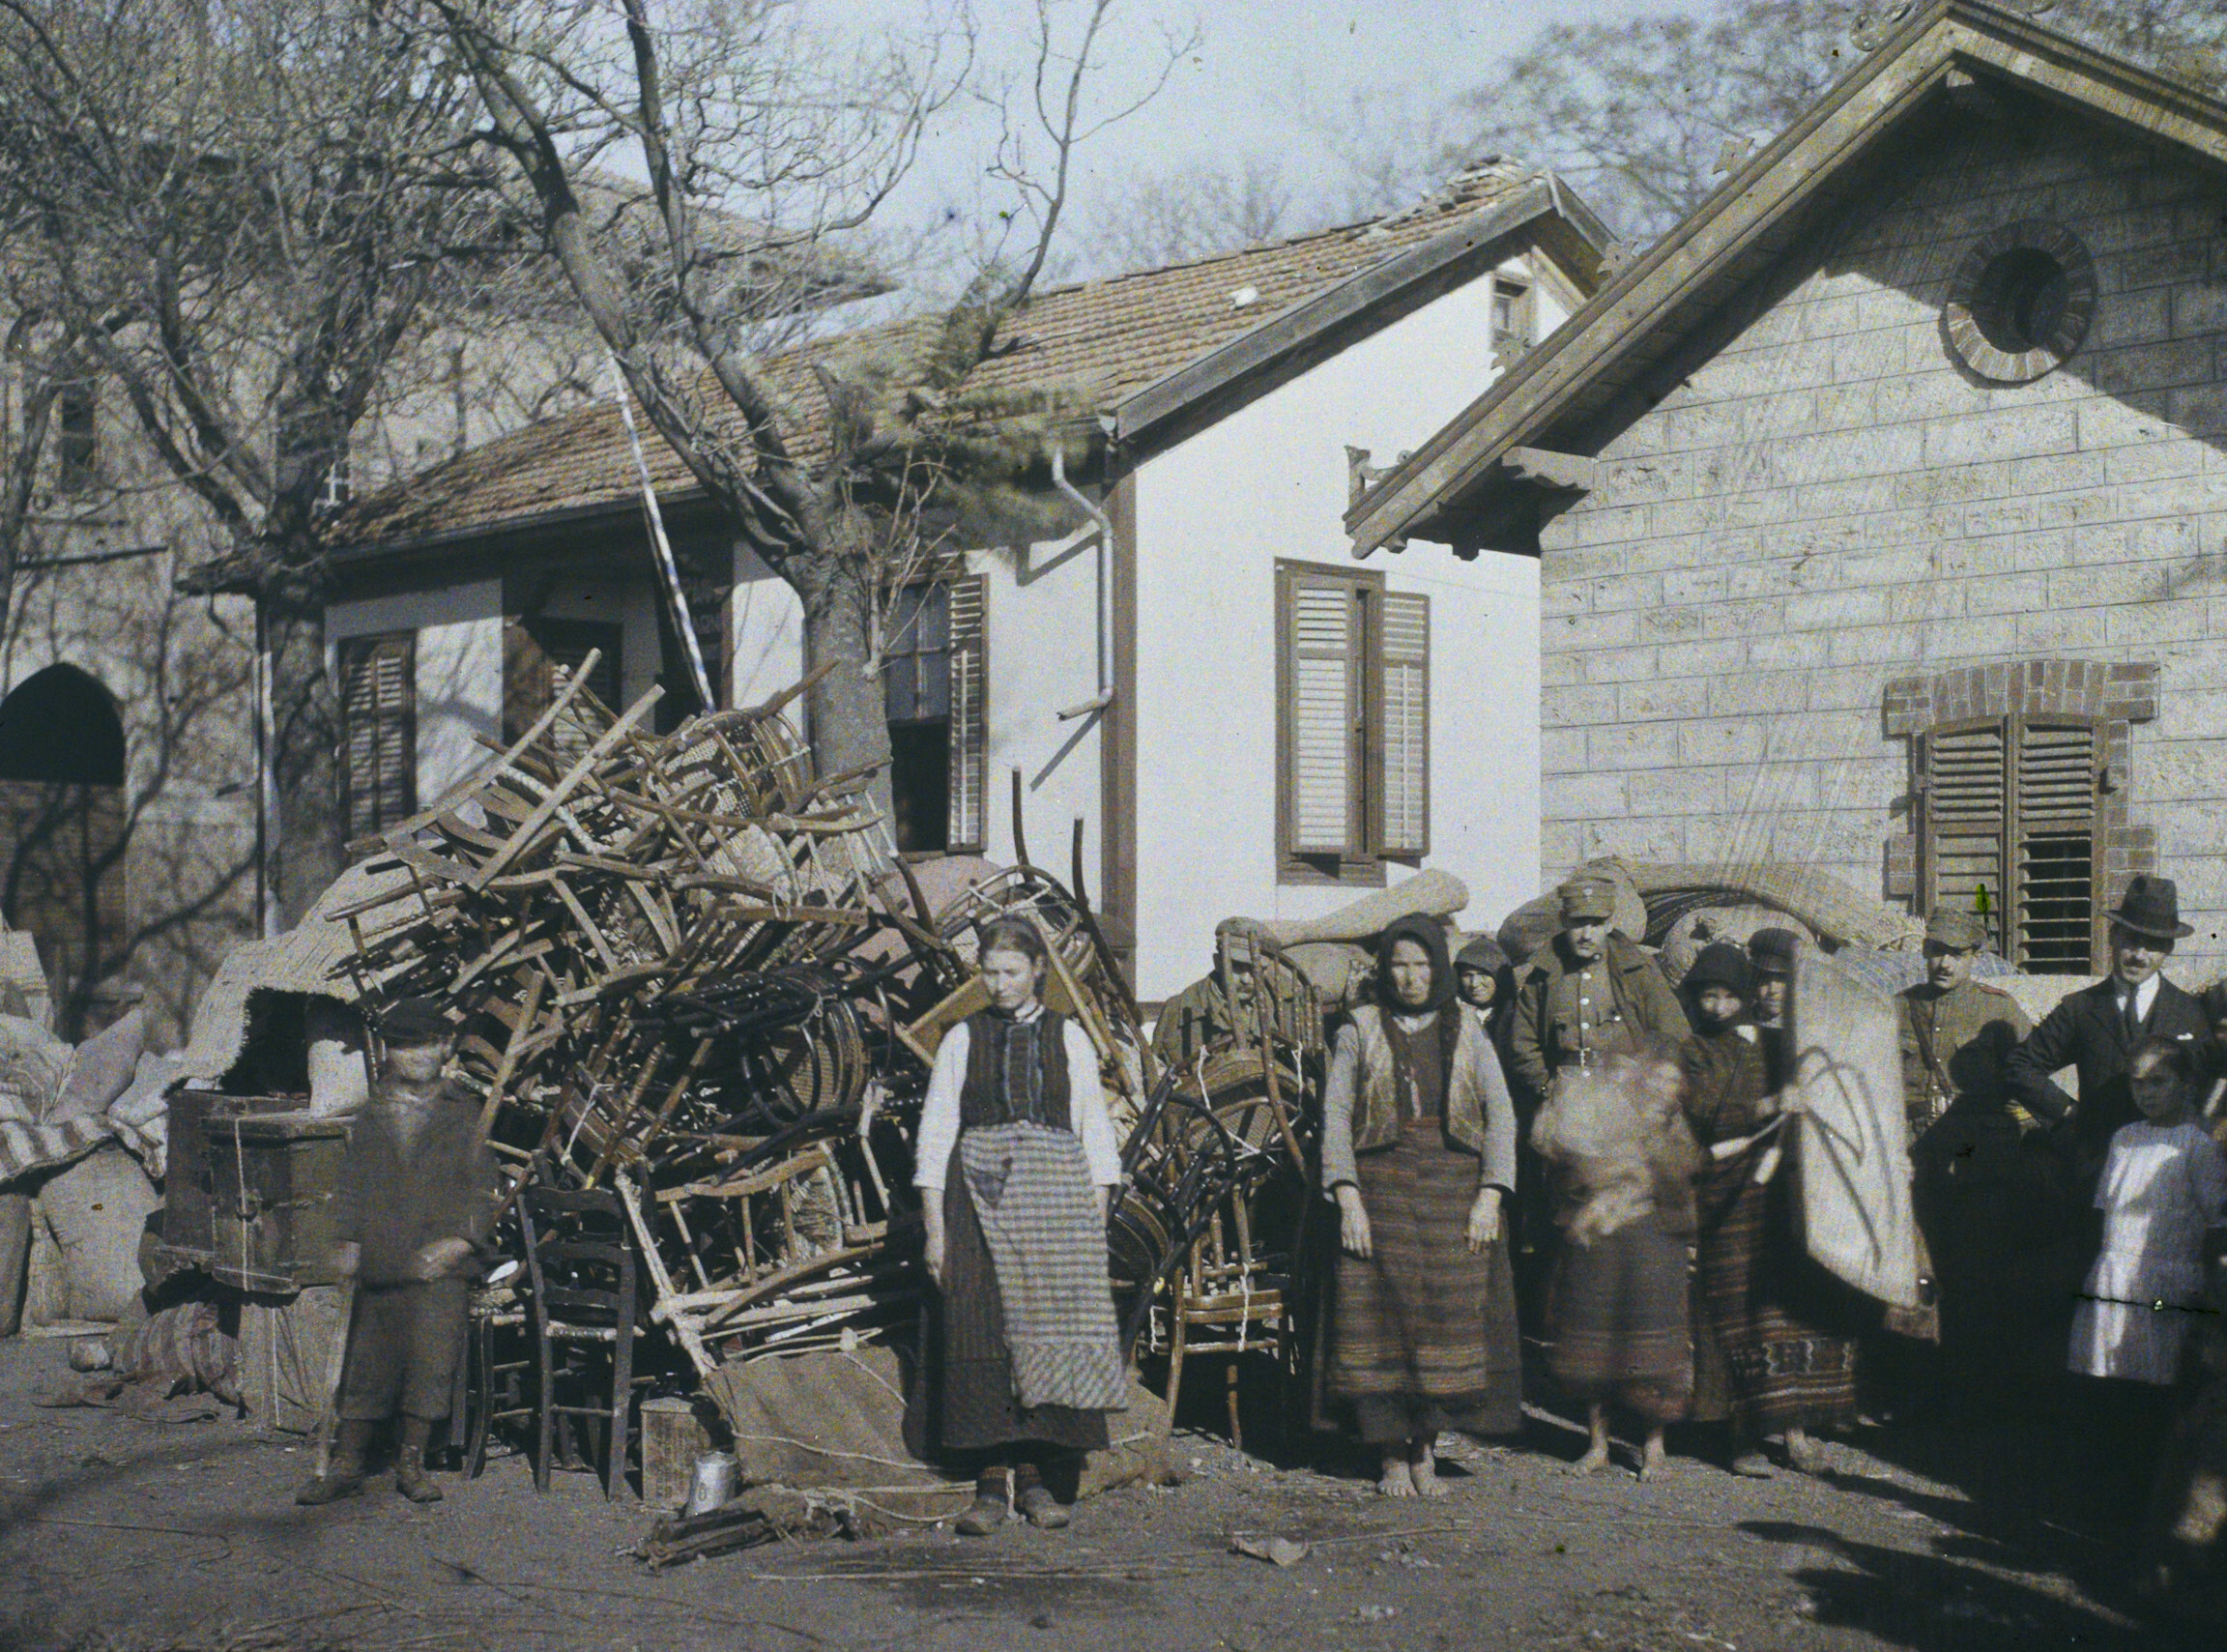 Адрианополь (Эдирне), Турция. Греки покидают город, 1922 год, автор Фредерик Гадмер (автохром)